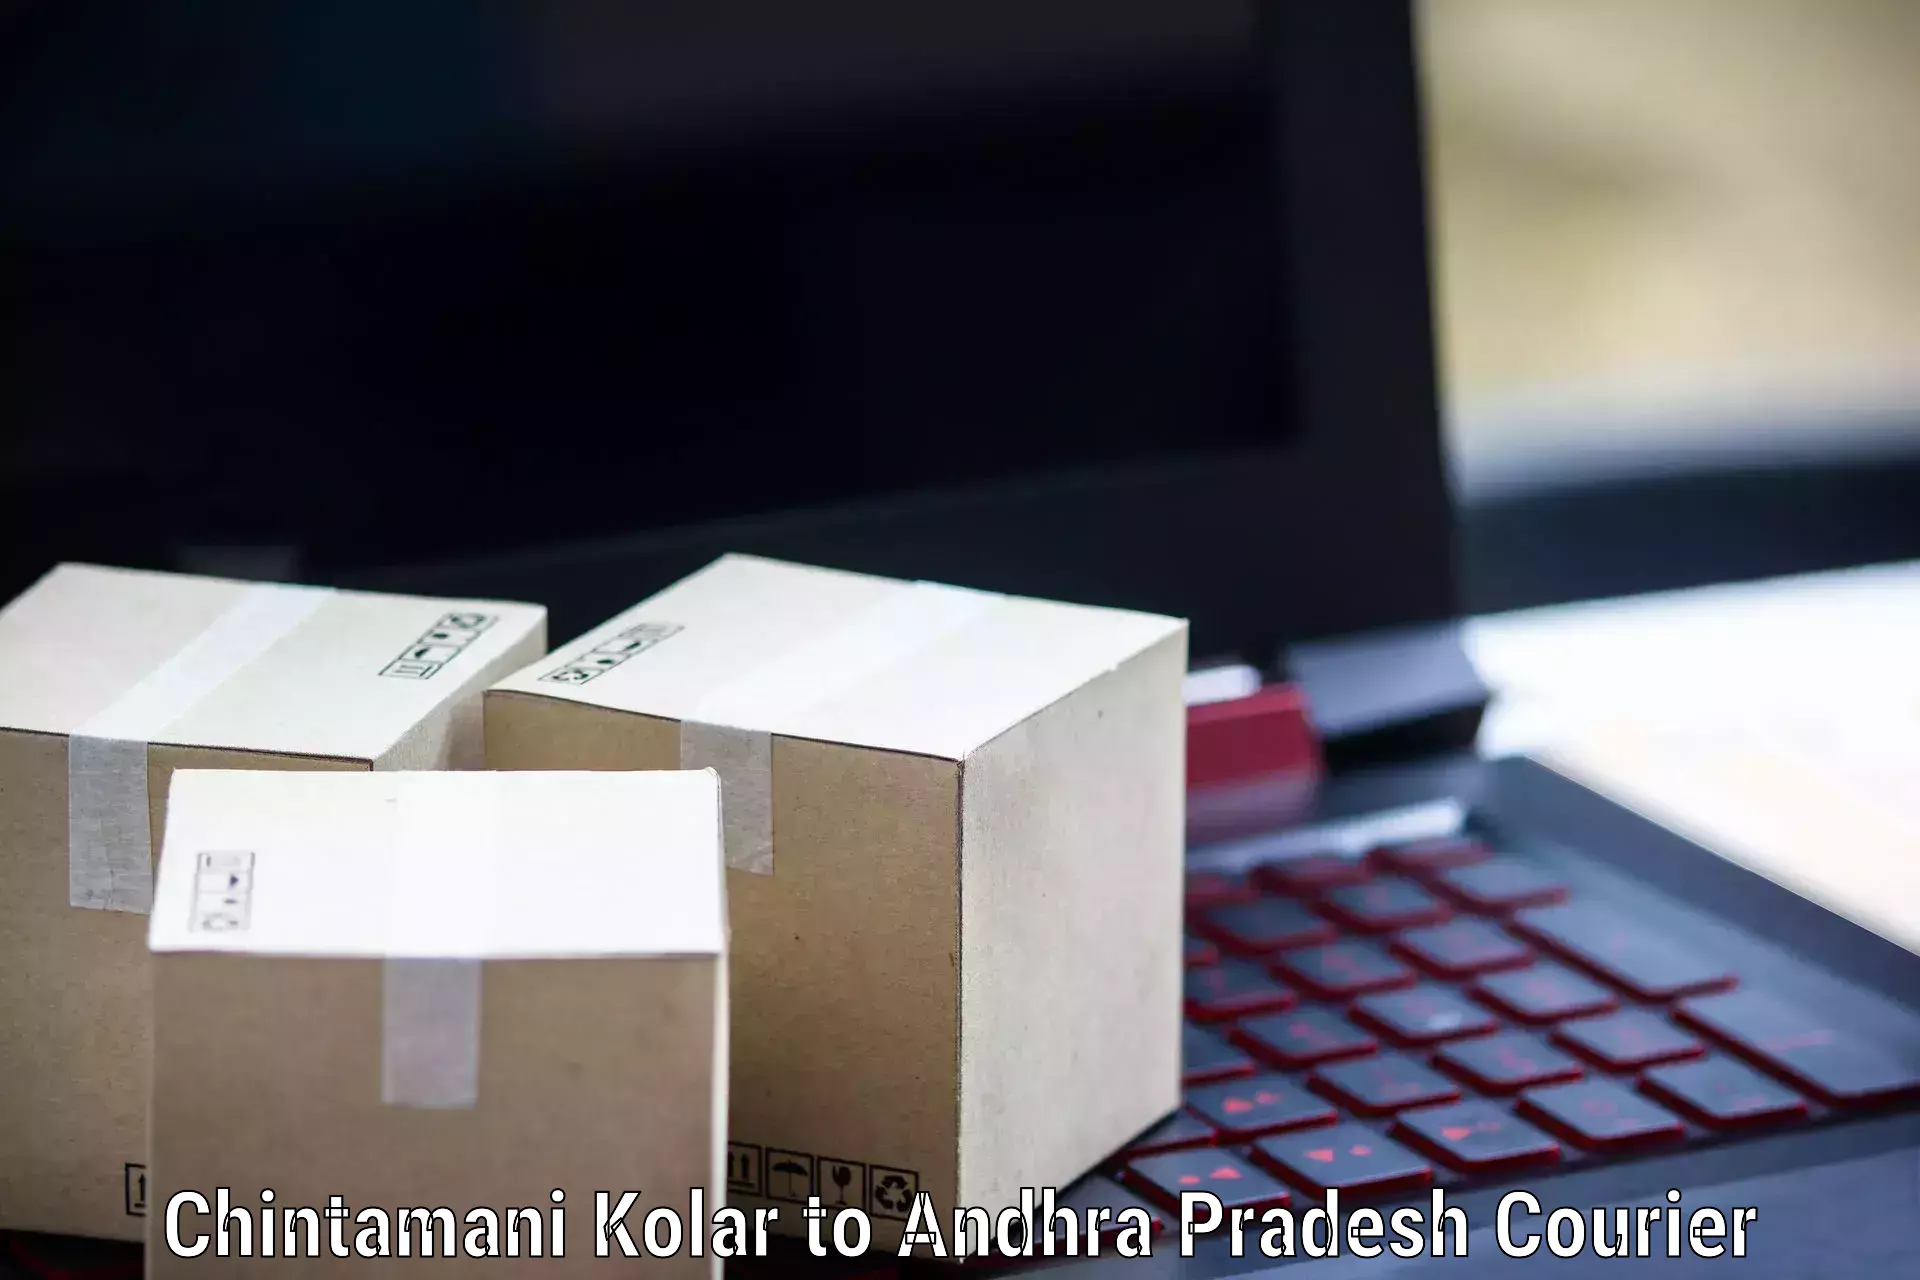 Large package courier Chintamani Kolar to Elamanchili